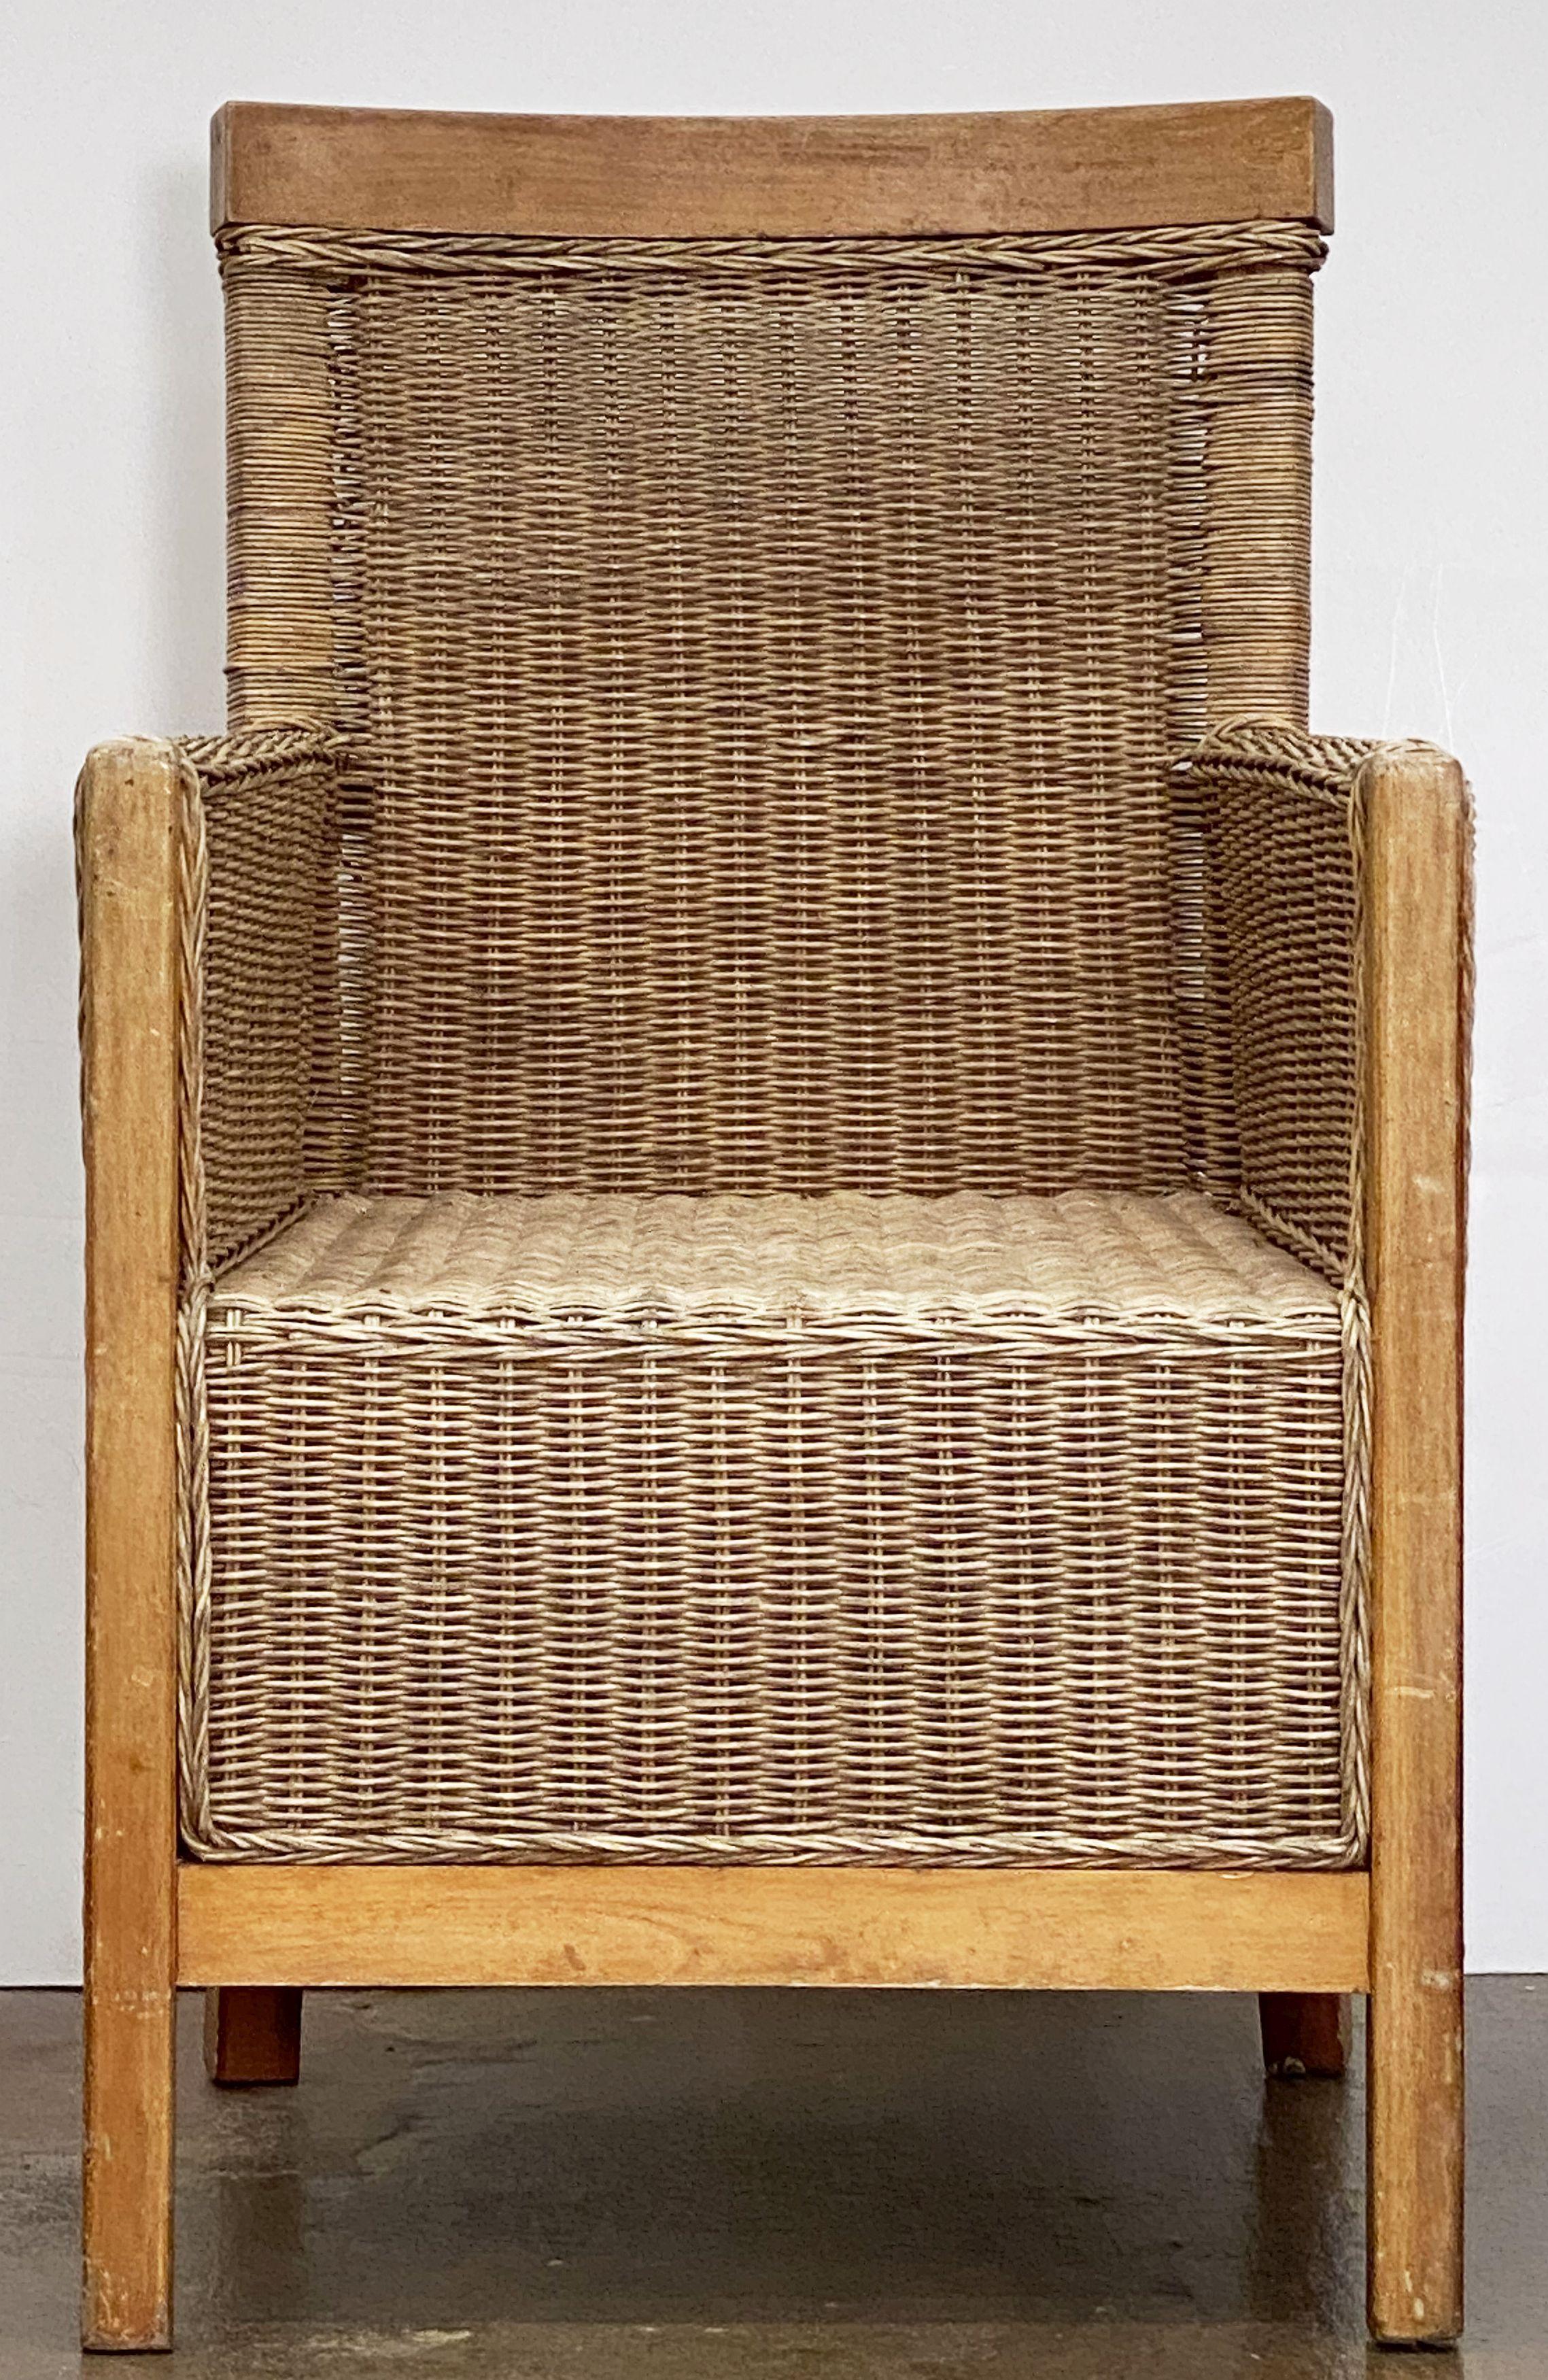 Ein schöner großer französischer Sessel aus geflochtenem Rohrgeflecht und Buchenholz mit einer bequemen Rückenlehne und Sitzfläche und einem robusten modernen Design.

Zwei verfügbar.